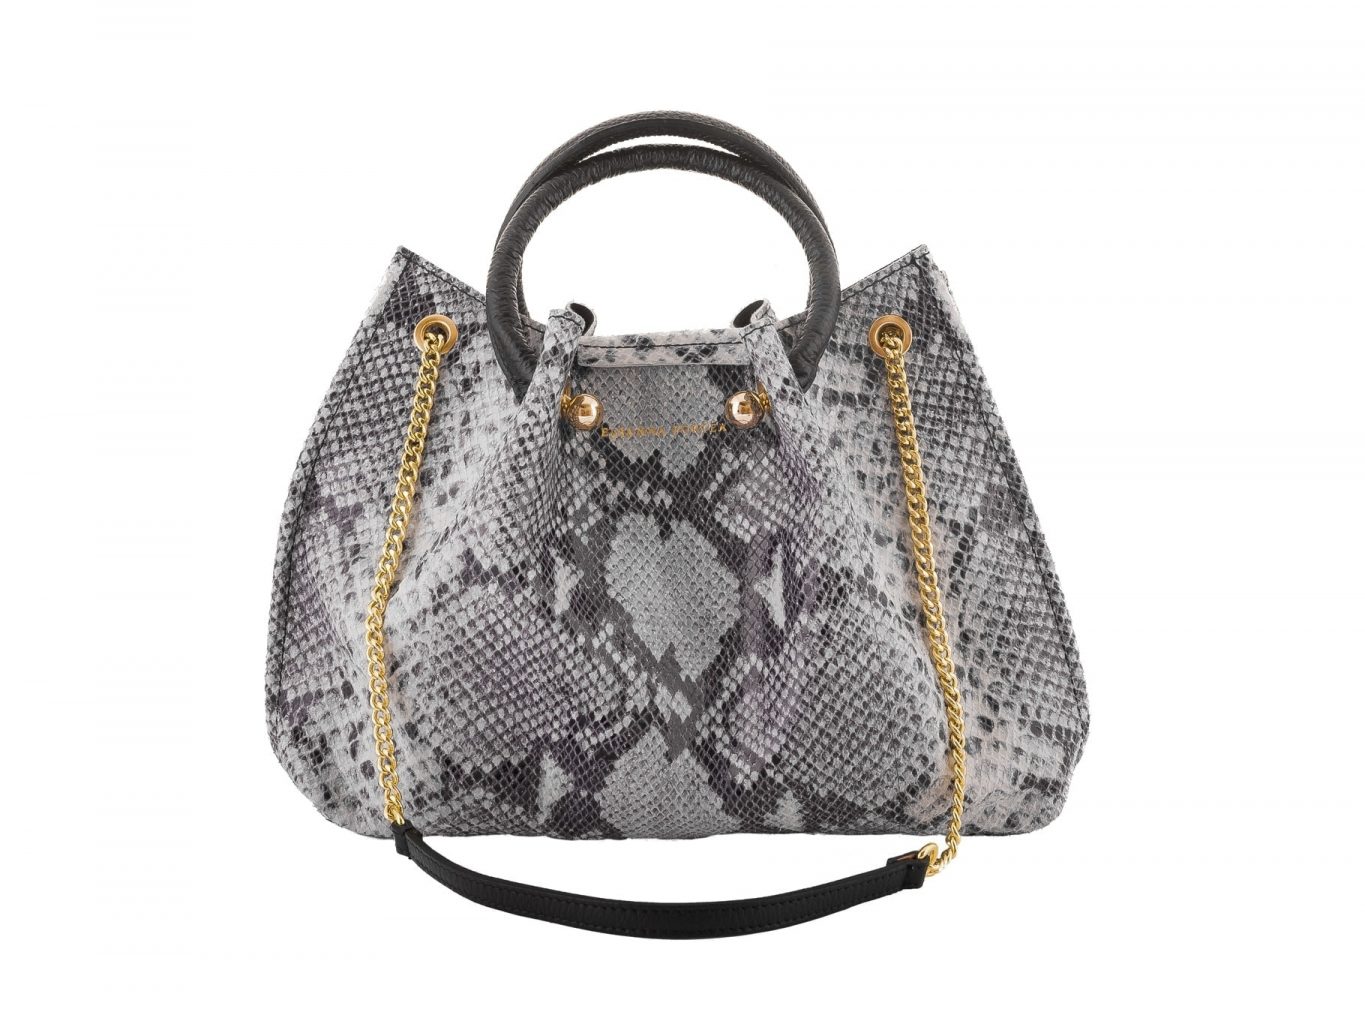 Shoulder Bag with Snake Design by Elsanna Portea